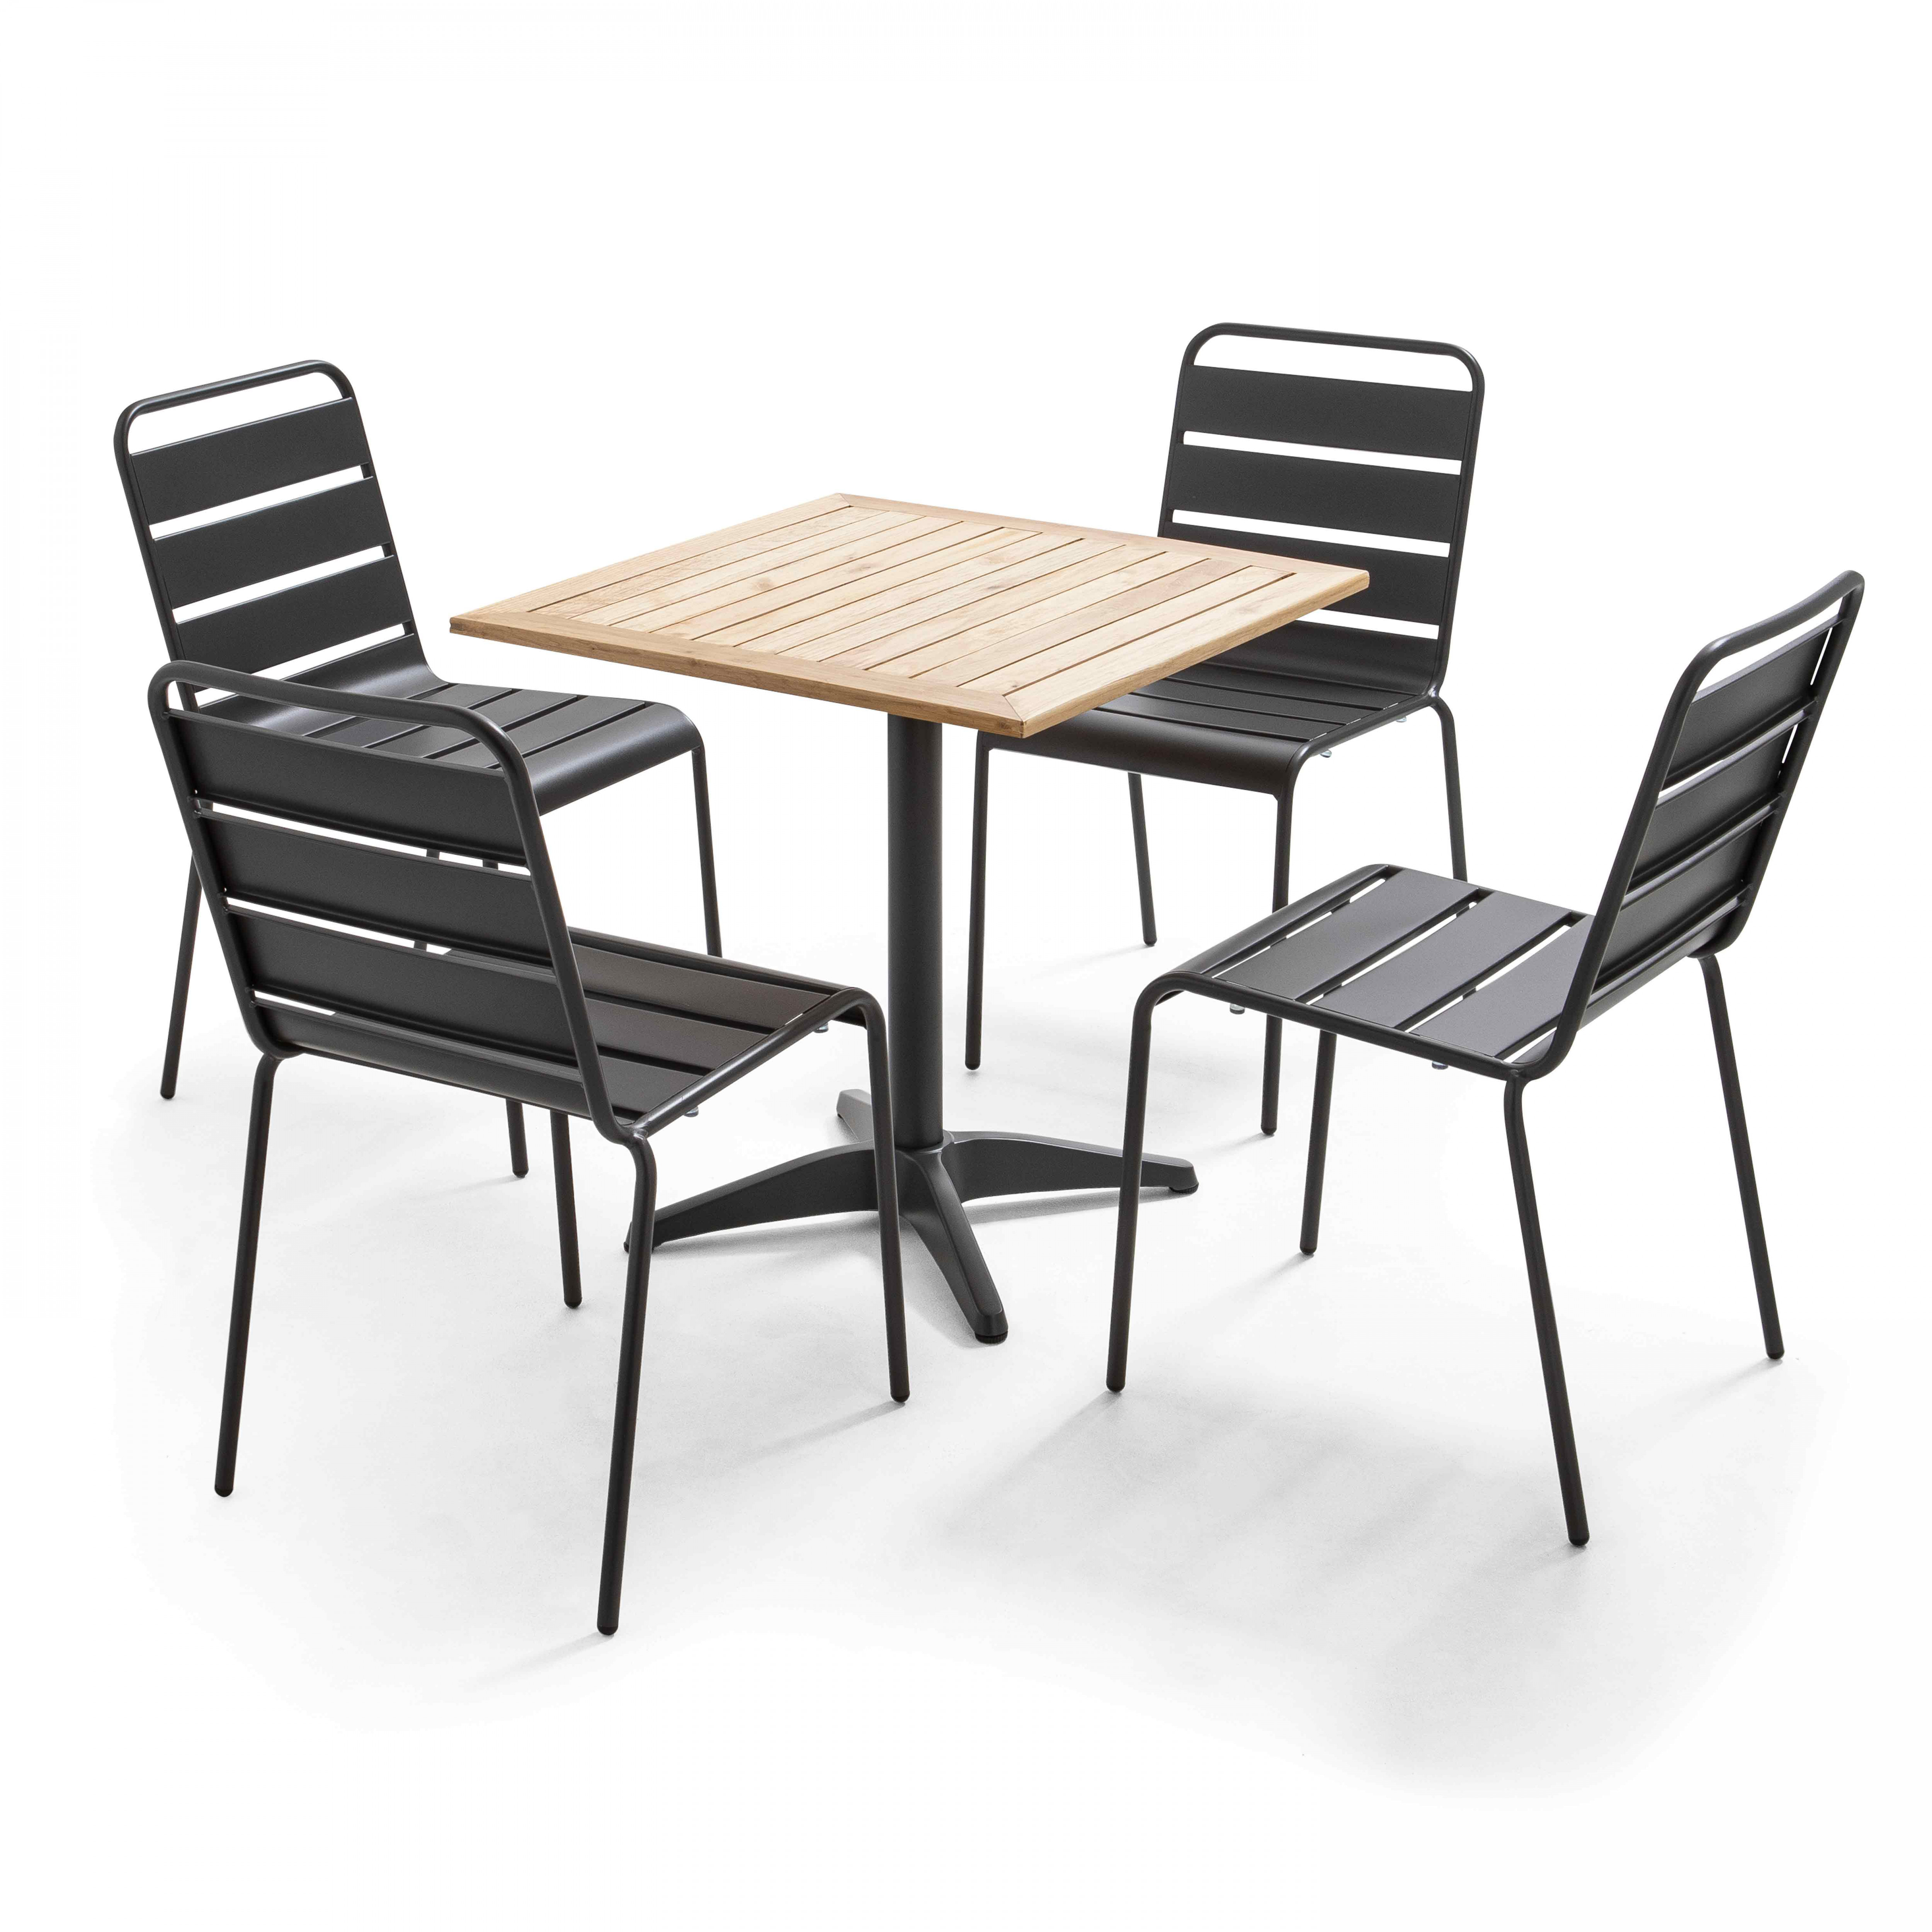 Ensemble bistrot table alumium et bois et 2 chaises en métal